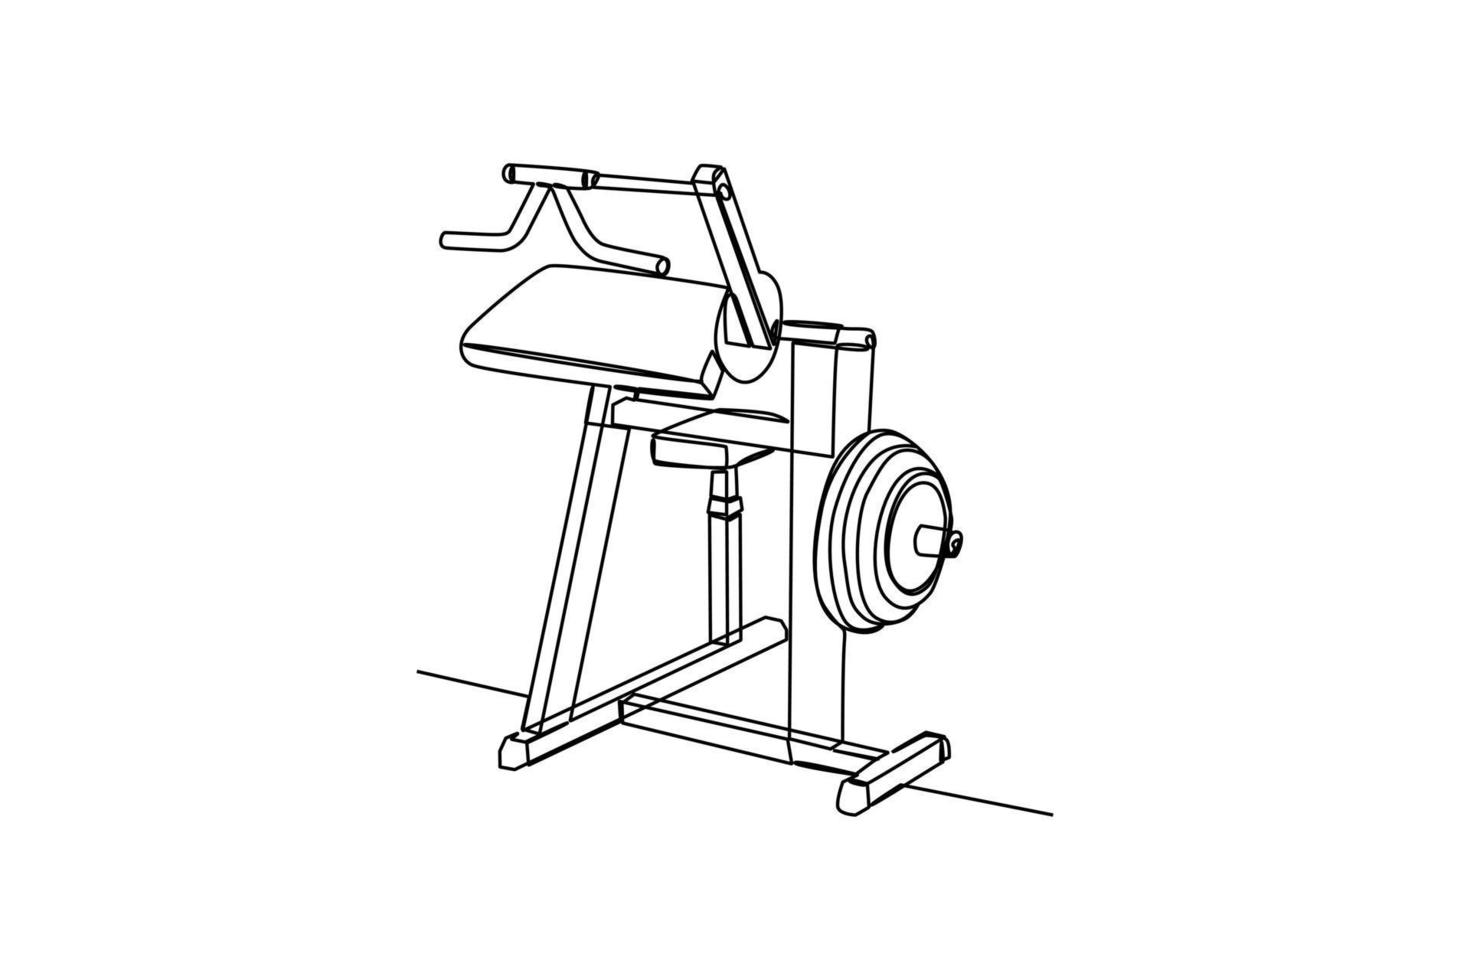 Single eine Linie Zeichnung ein Trizeps Maschine zu bauen Trizeps Muskel. Fitness Werkzeuge Konzept. kontinuierlich Linie Zeichnung Design Grafik Vektor Illustration.